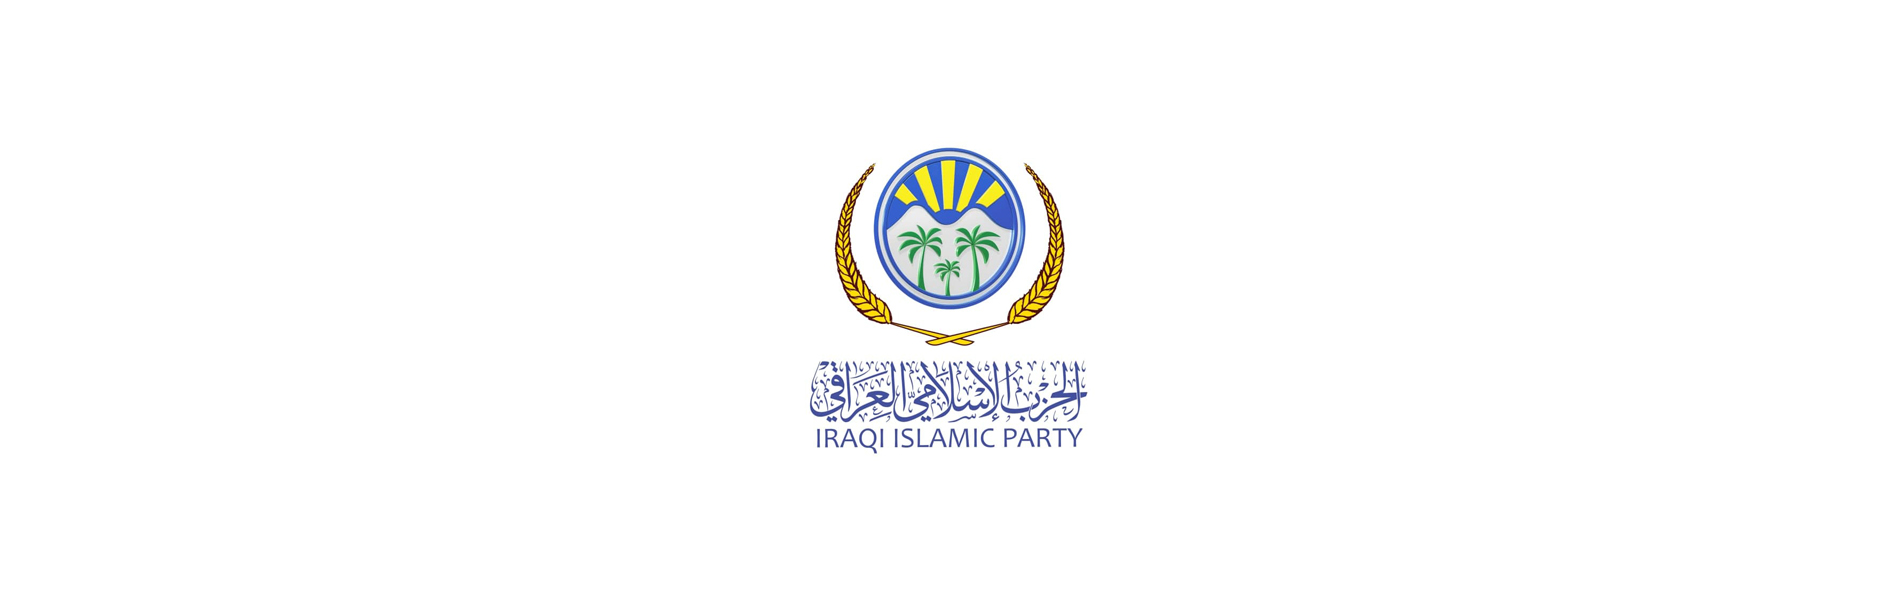 الحزب الإسلامي يبارك بحلول العام الهجري الجديد داعياً ليكون عام عمل وطني متميز لتخفيف معاناة العراقيين